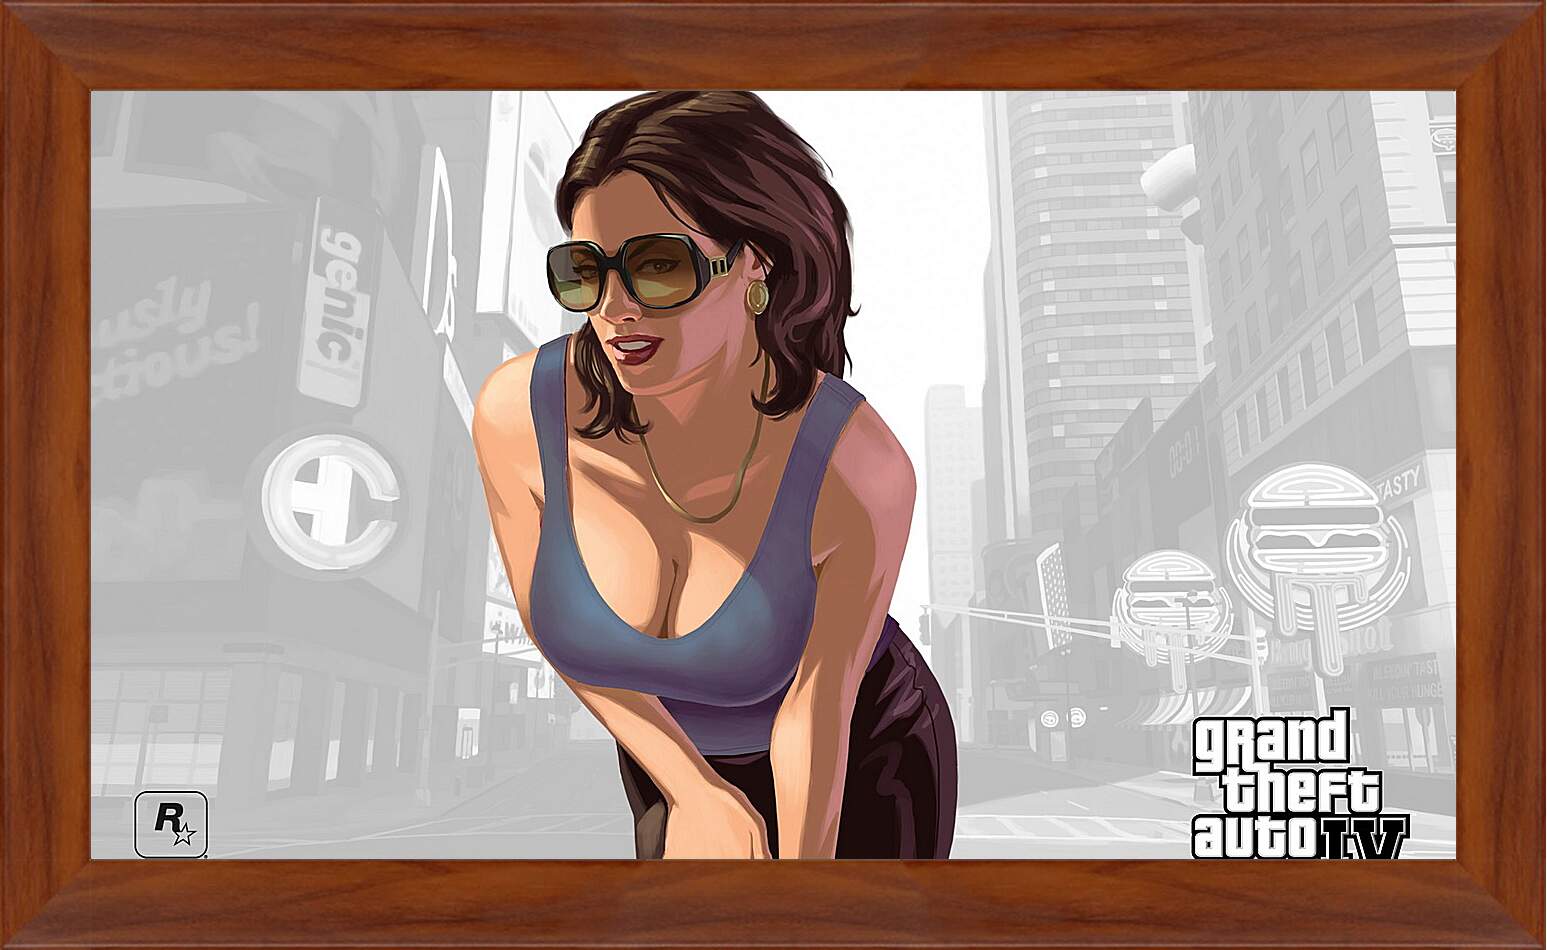 Картина в раме - girl, gta 4, sunglasses
